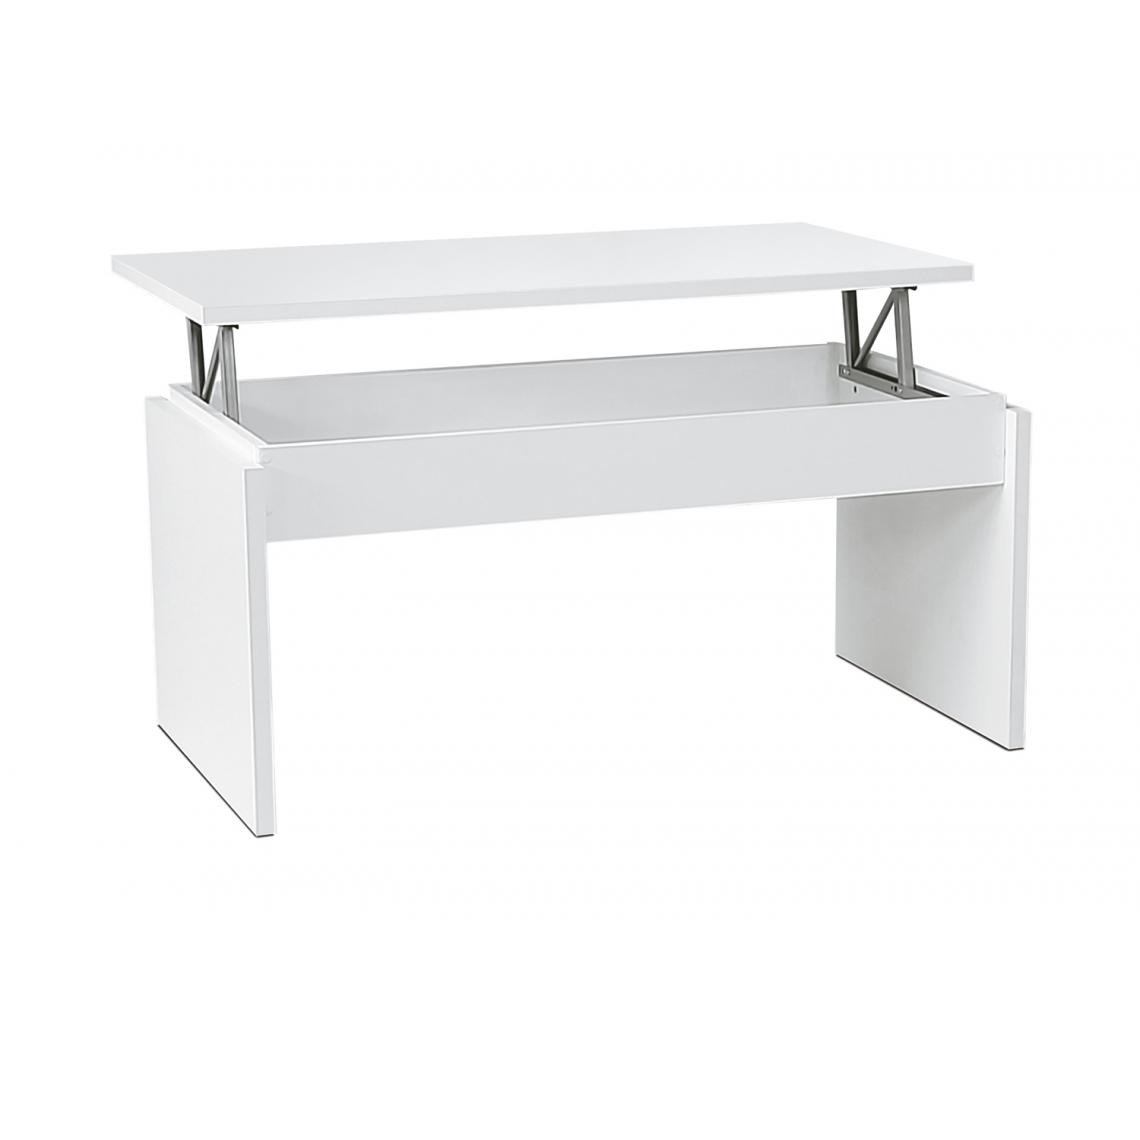 Pegane - Table basse relevable coloris blanc - longueur 105 x profondeur 55 x hauteur 51/63 cm - Tables basses